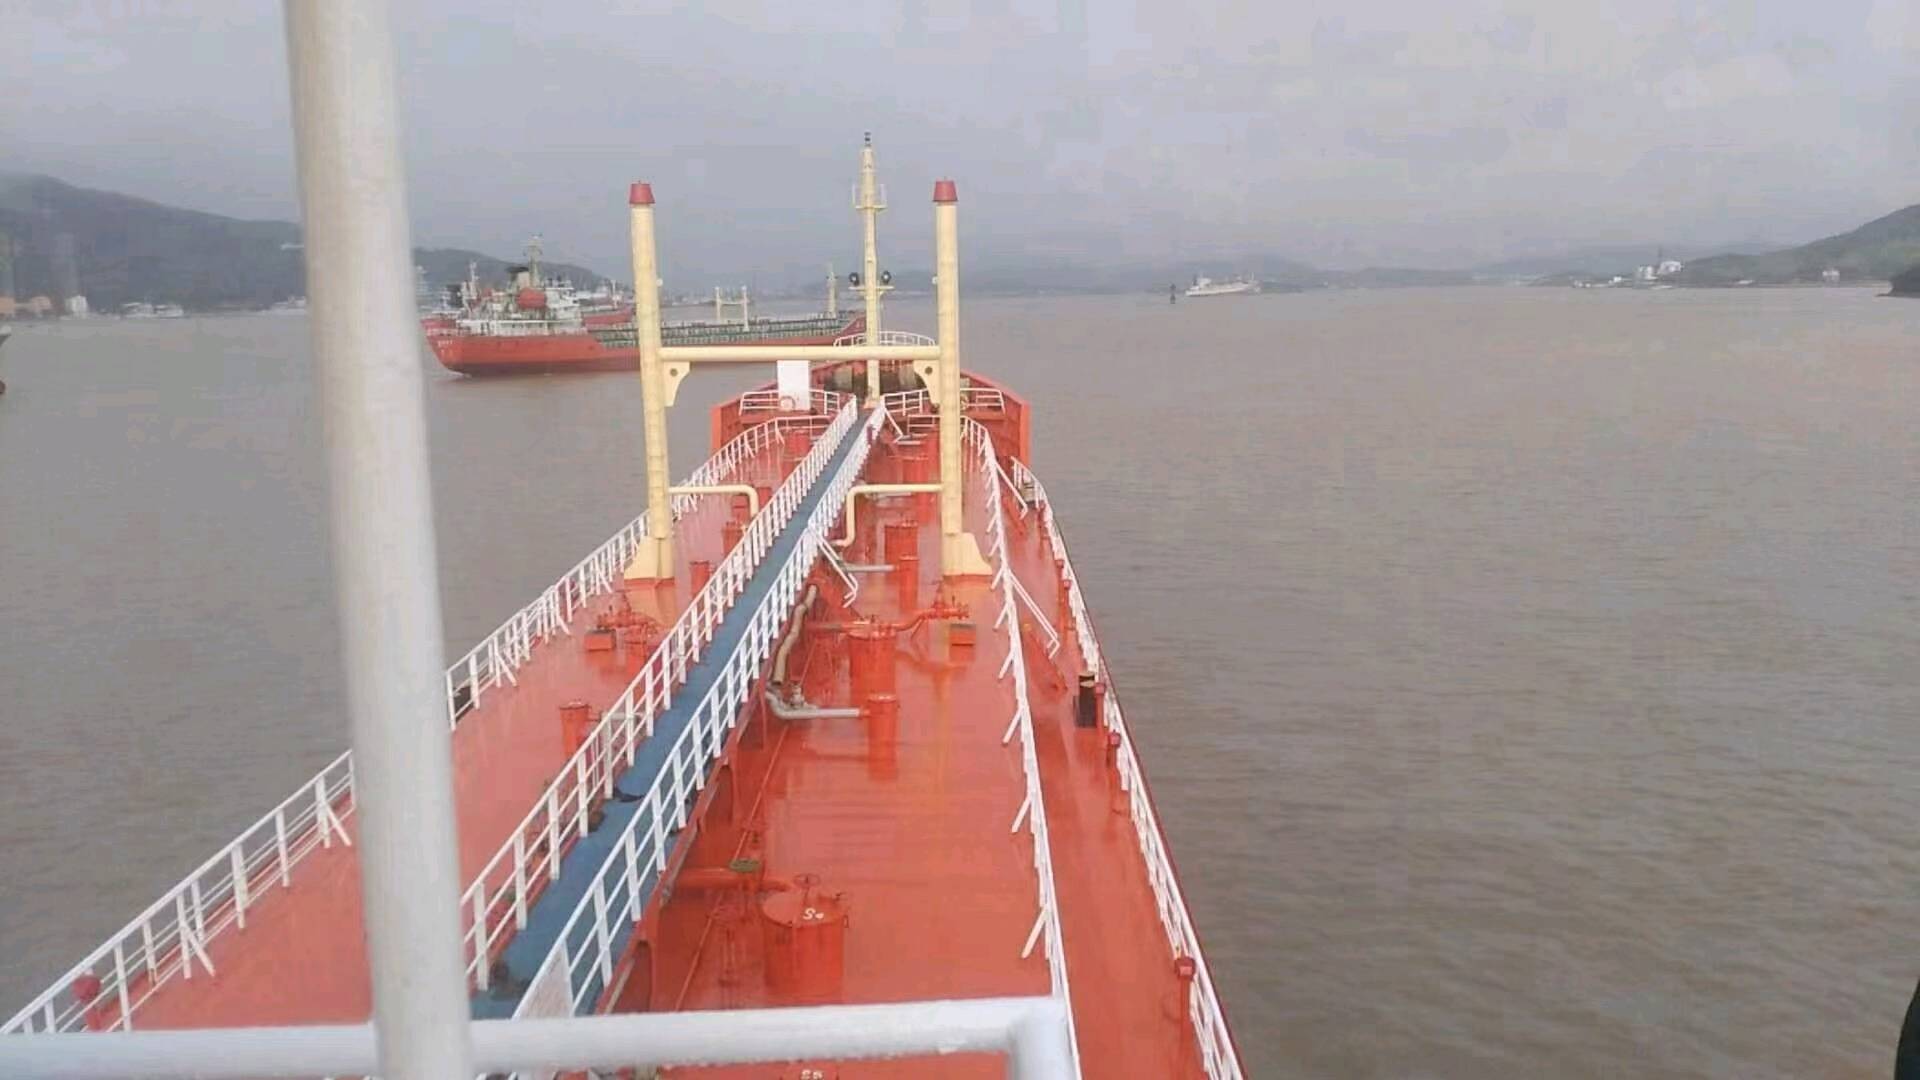 出售 ‮0043‬‬吨油船